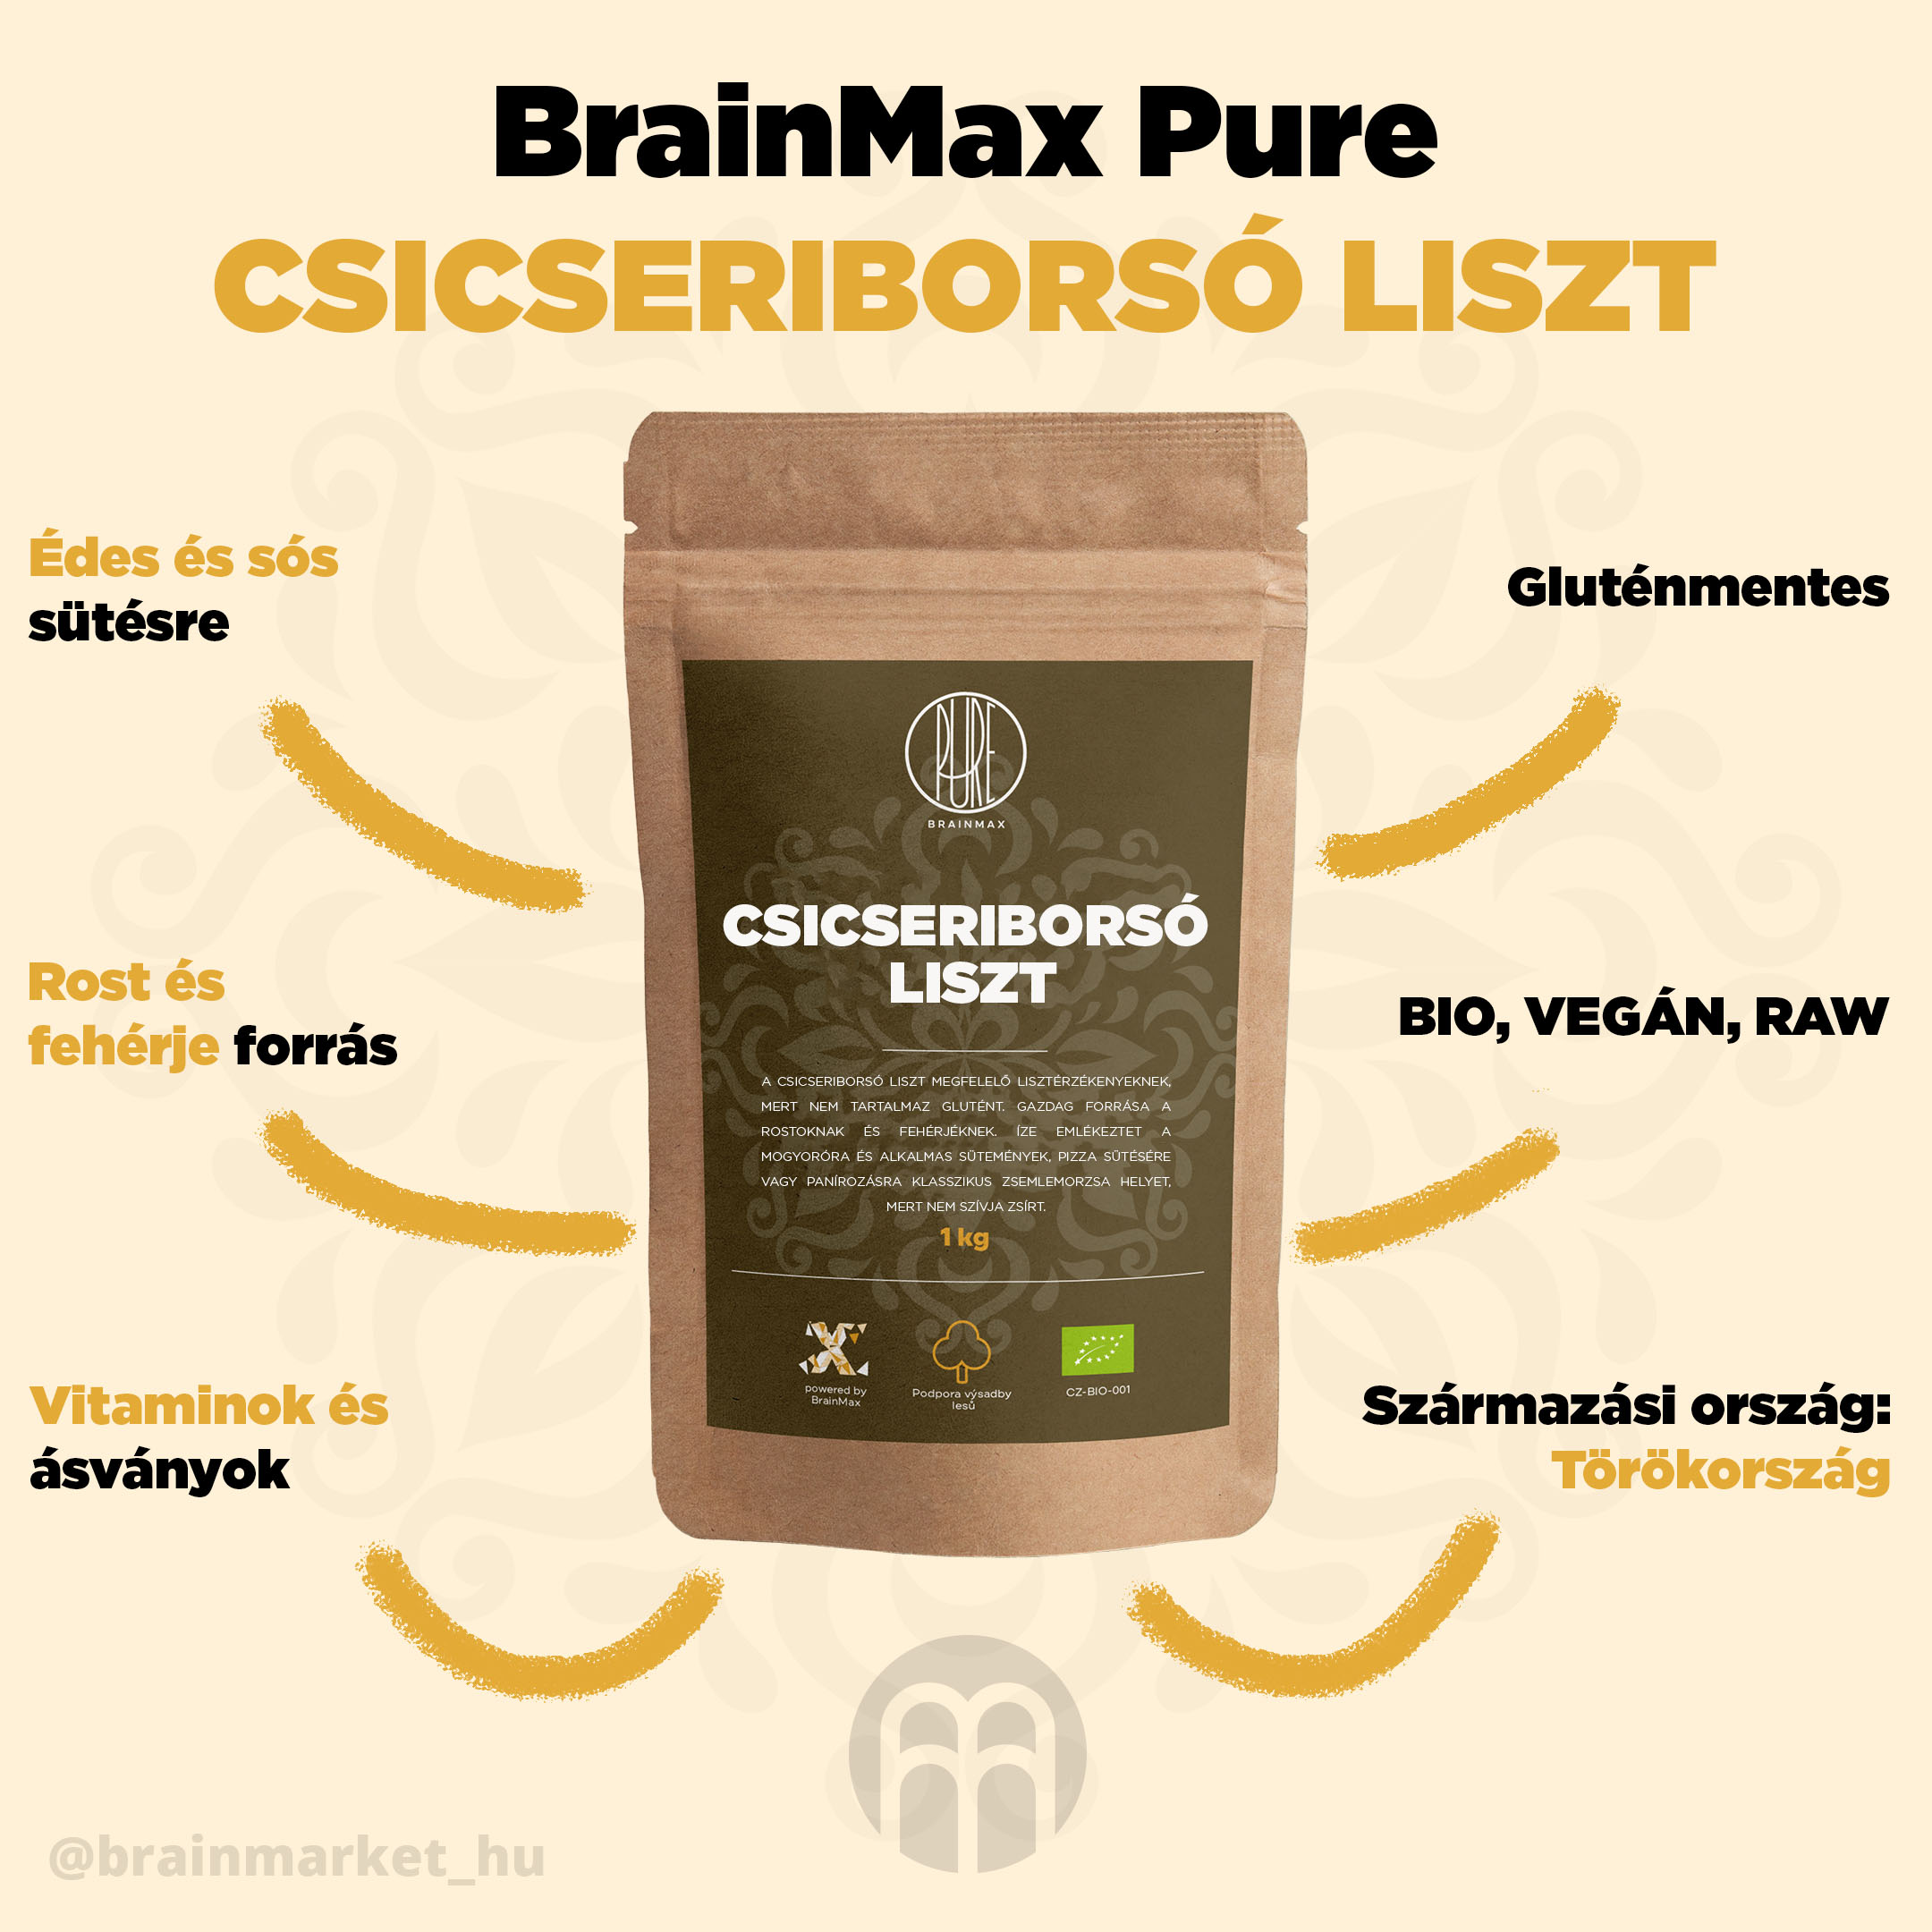 BrainMax tiszta csicseriborsó BIO liszt 1 kg - BrainMarket.cz